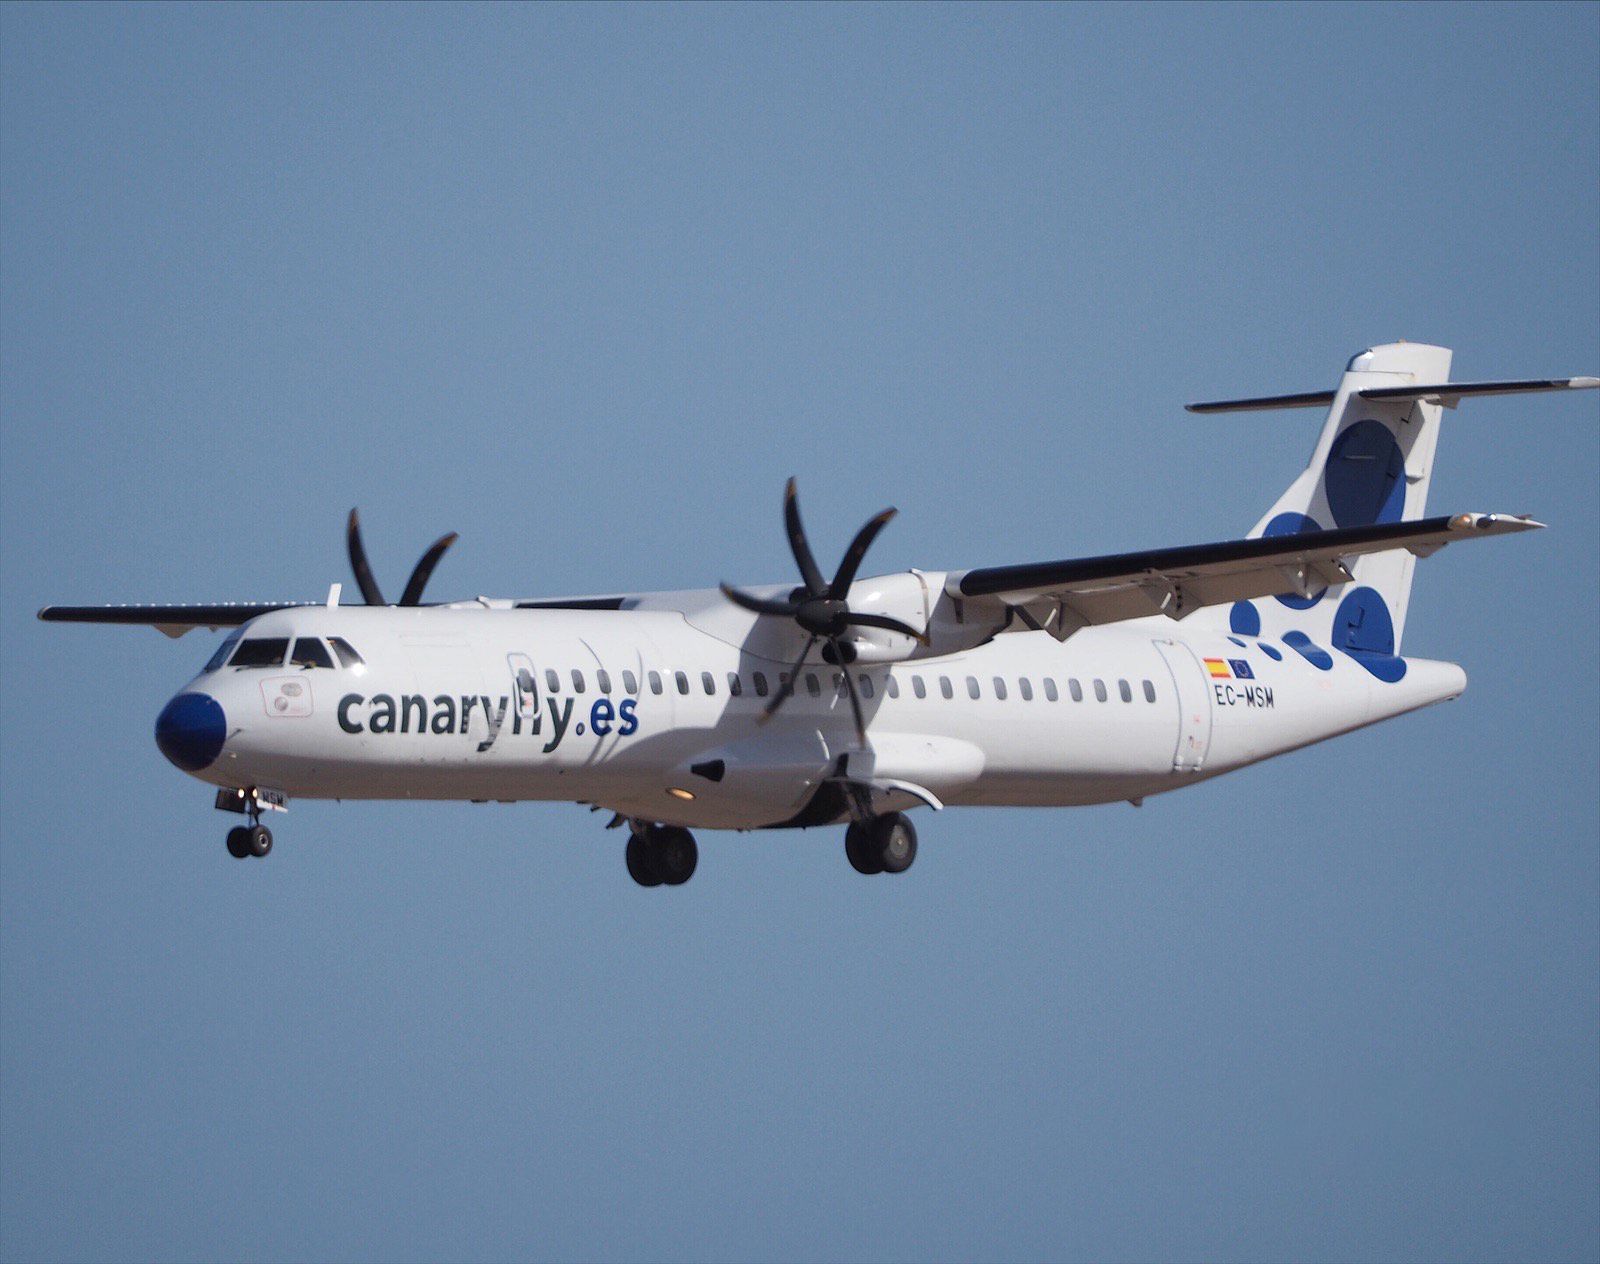 La compañía aérea Canaryfly anuncia billetes a cinco euros de forma permanente. Foto: Canaryfly.